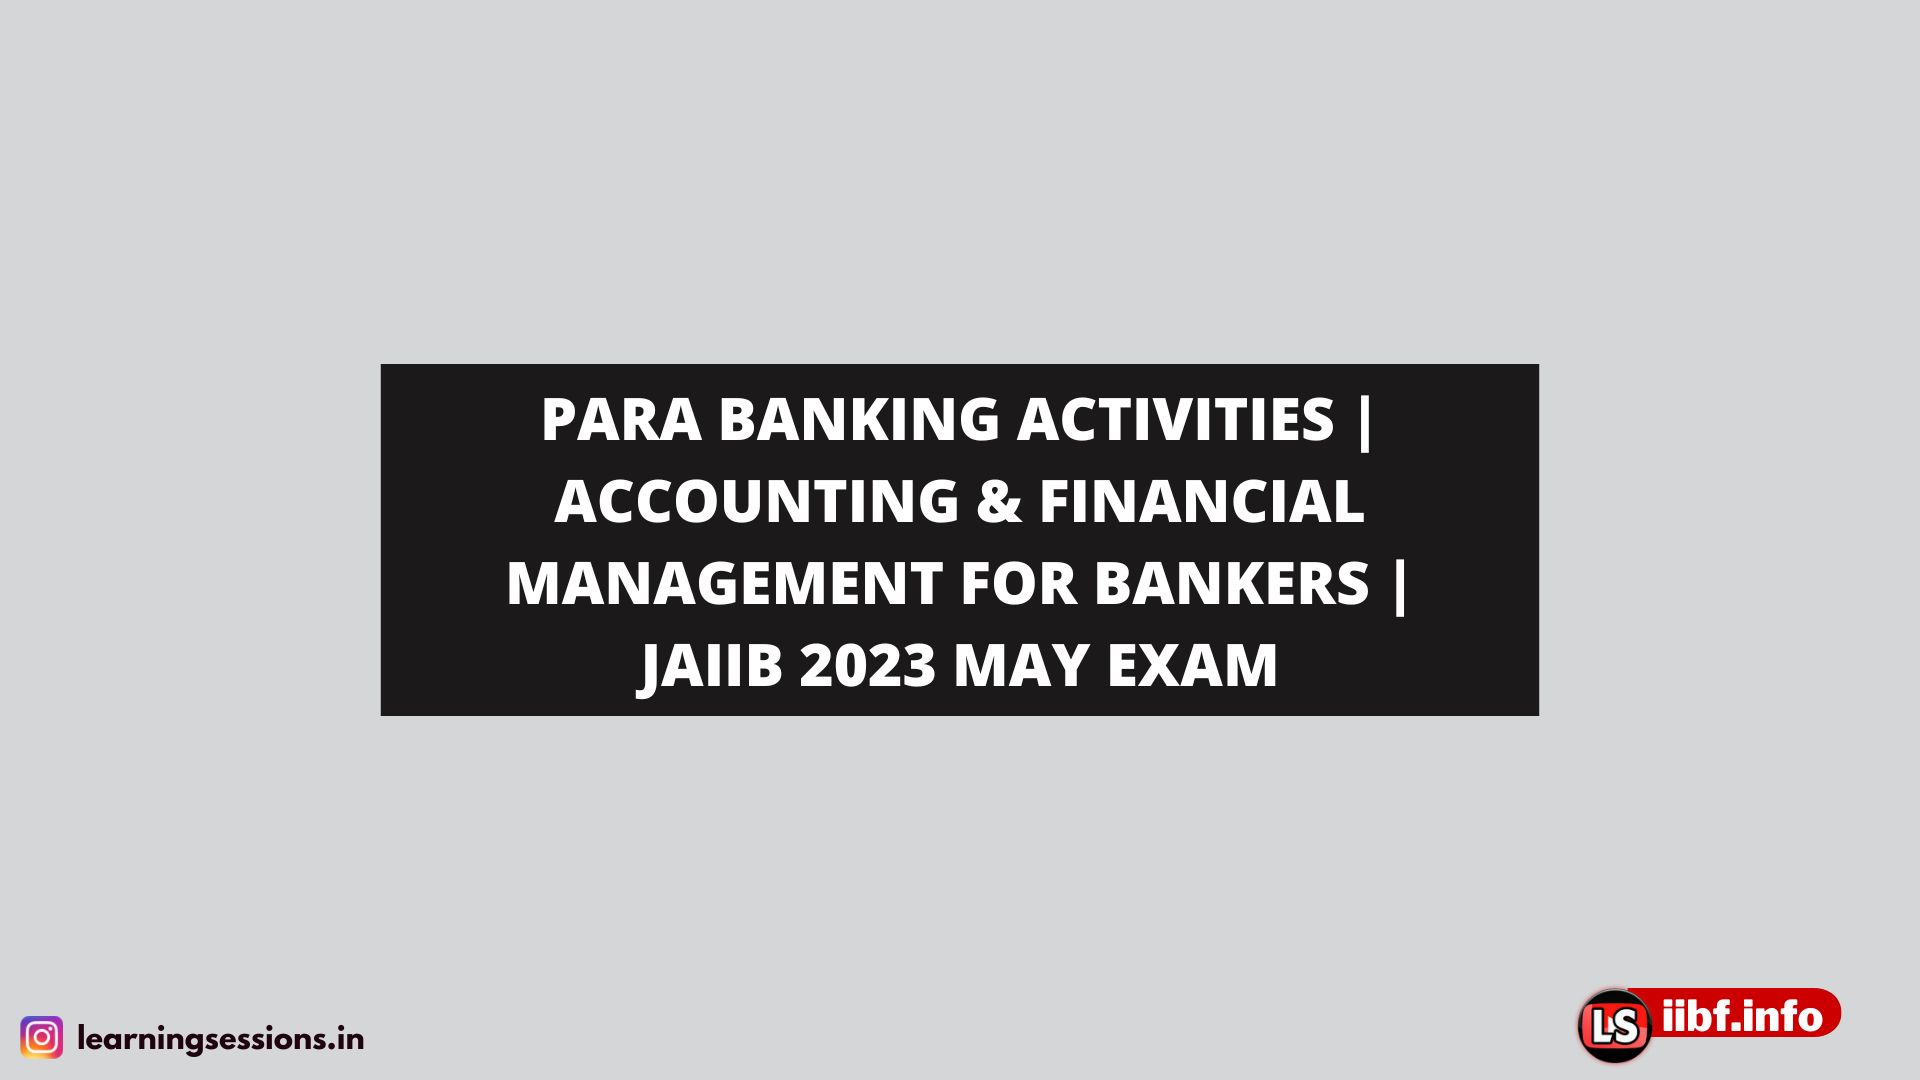 PARA BANKING ACTIVITIES | ACCOUNTING & FINANCIAL MANAGEMENT FOR BANKERS | JAIIB 2023 MAY EXAM